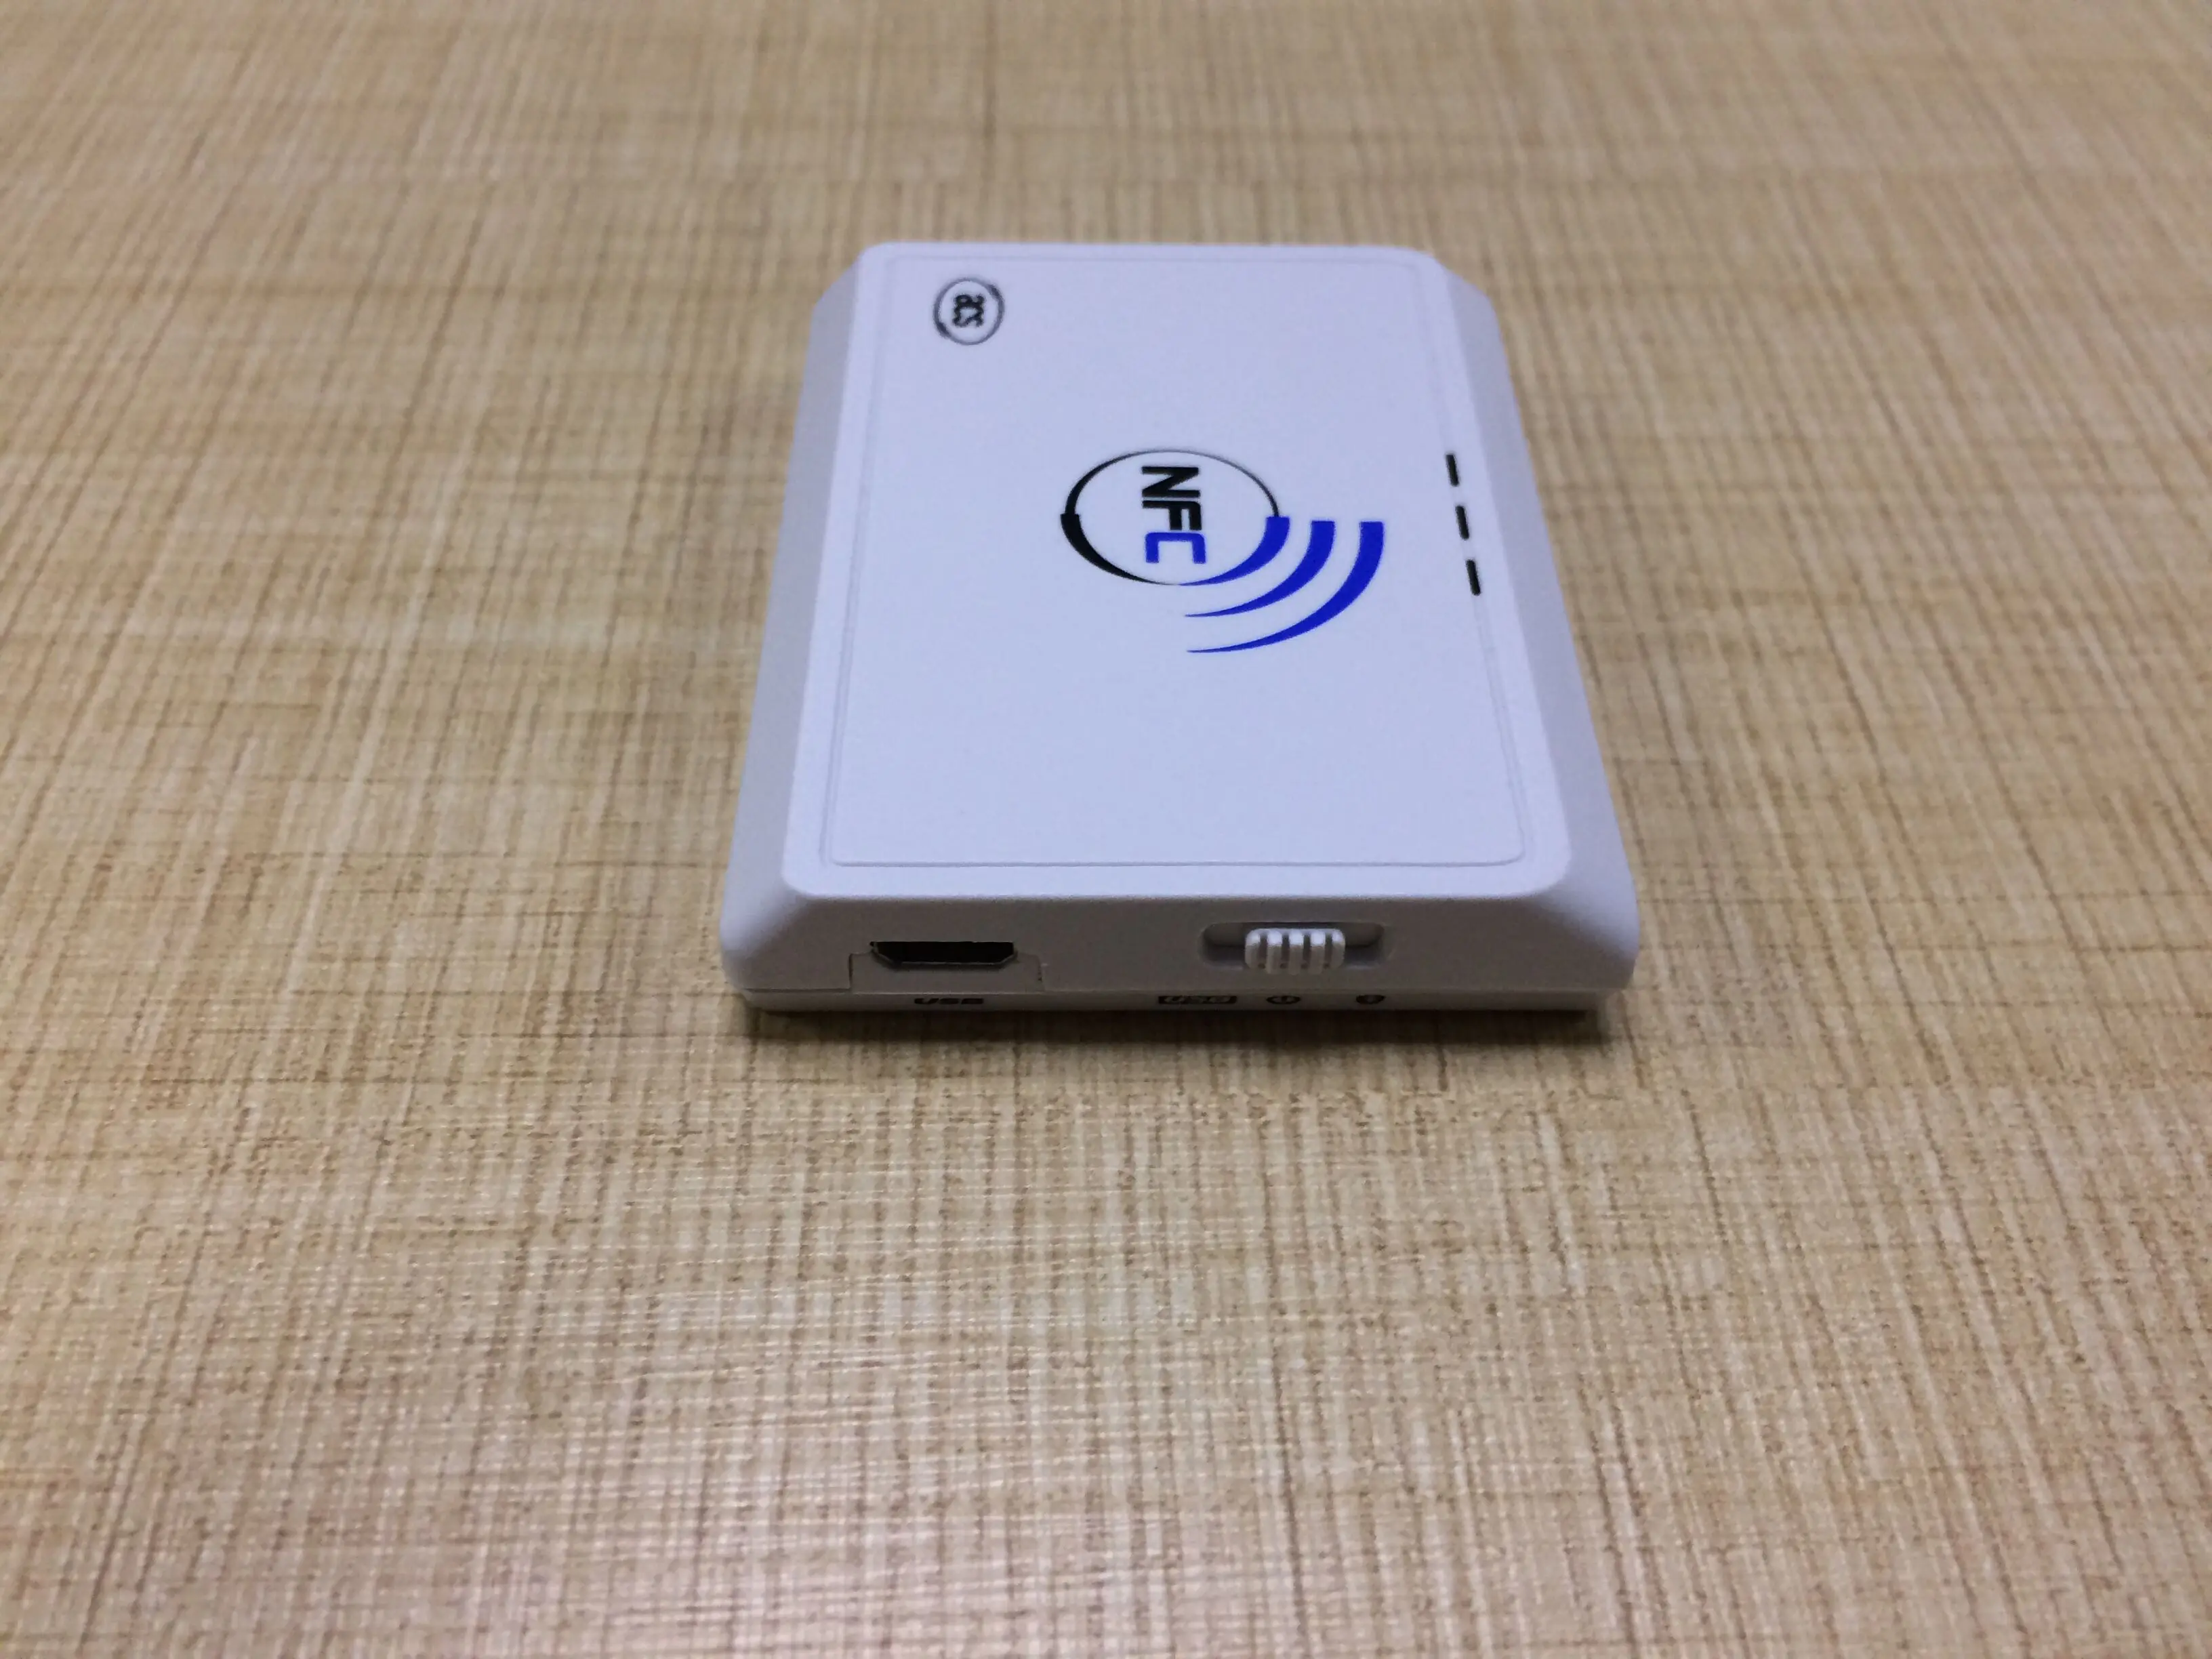 Белый Bluetooth 13 56 МГц NFC смарт кард ридер писатель бесконтактная карточка для чтения